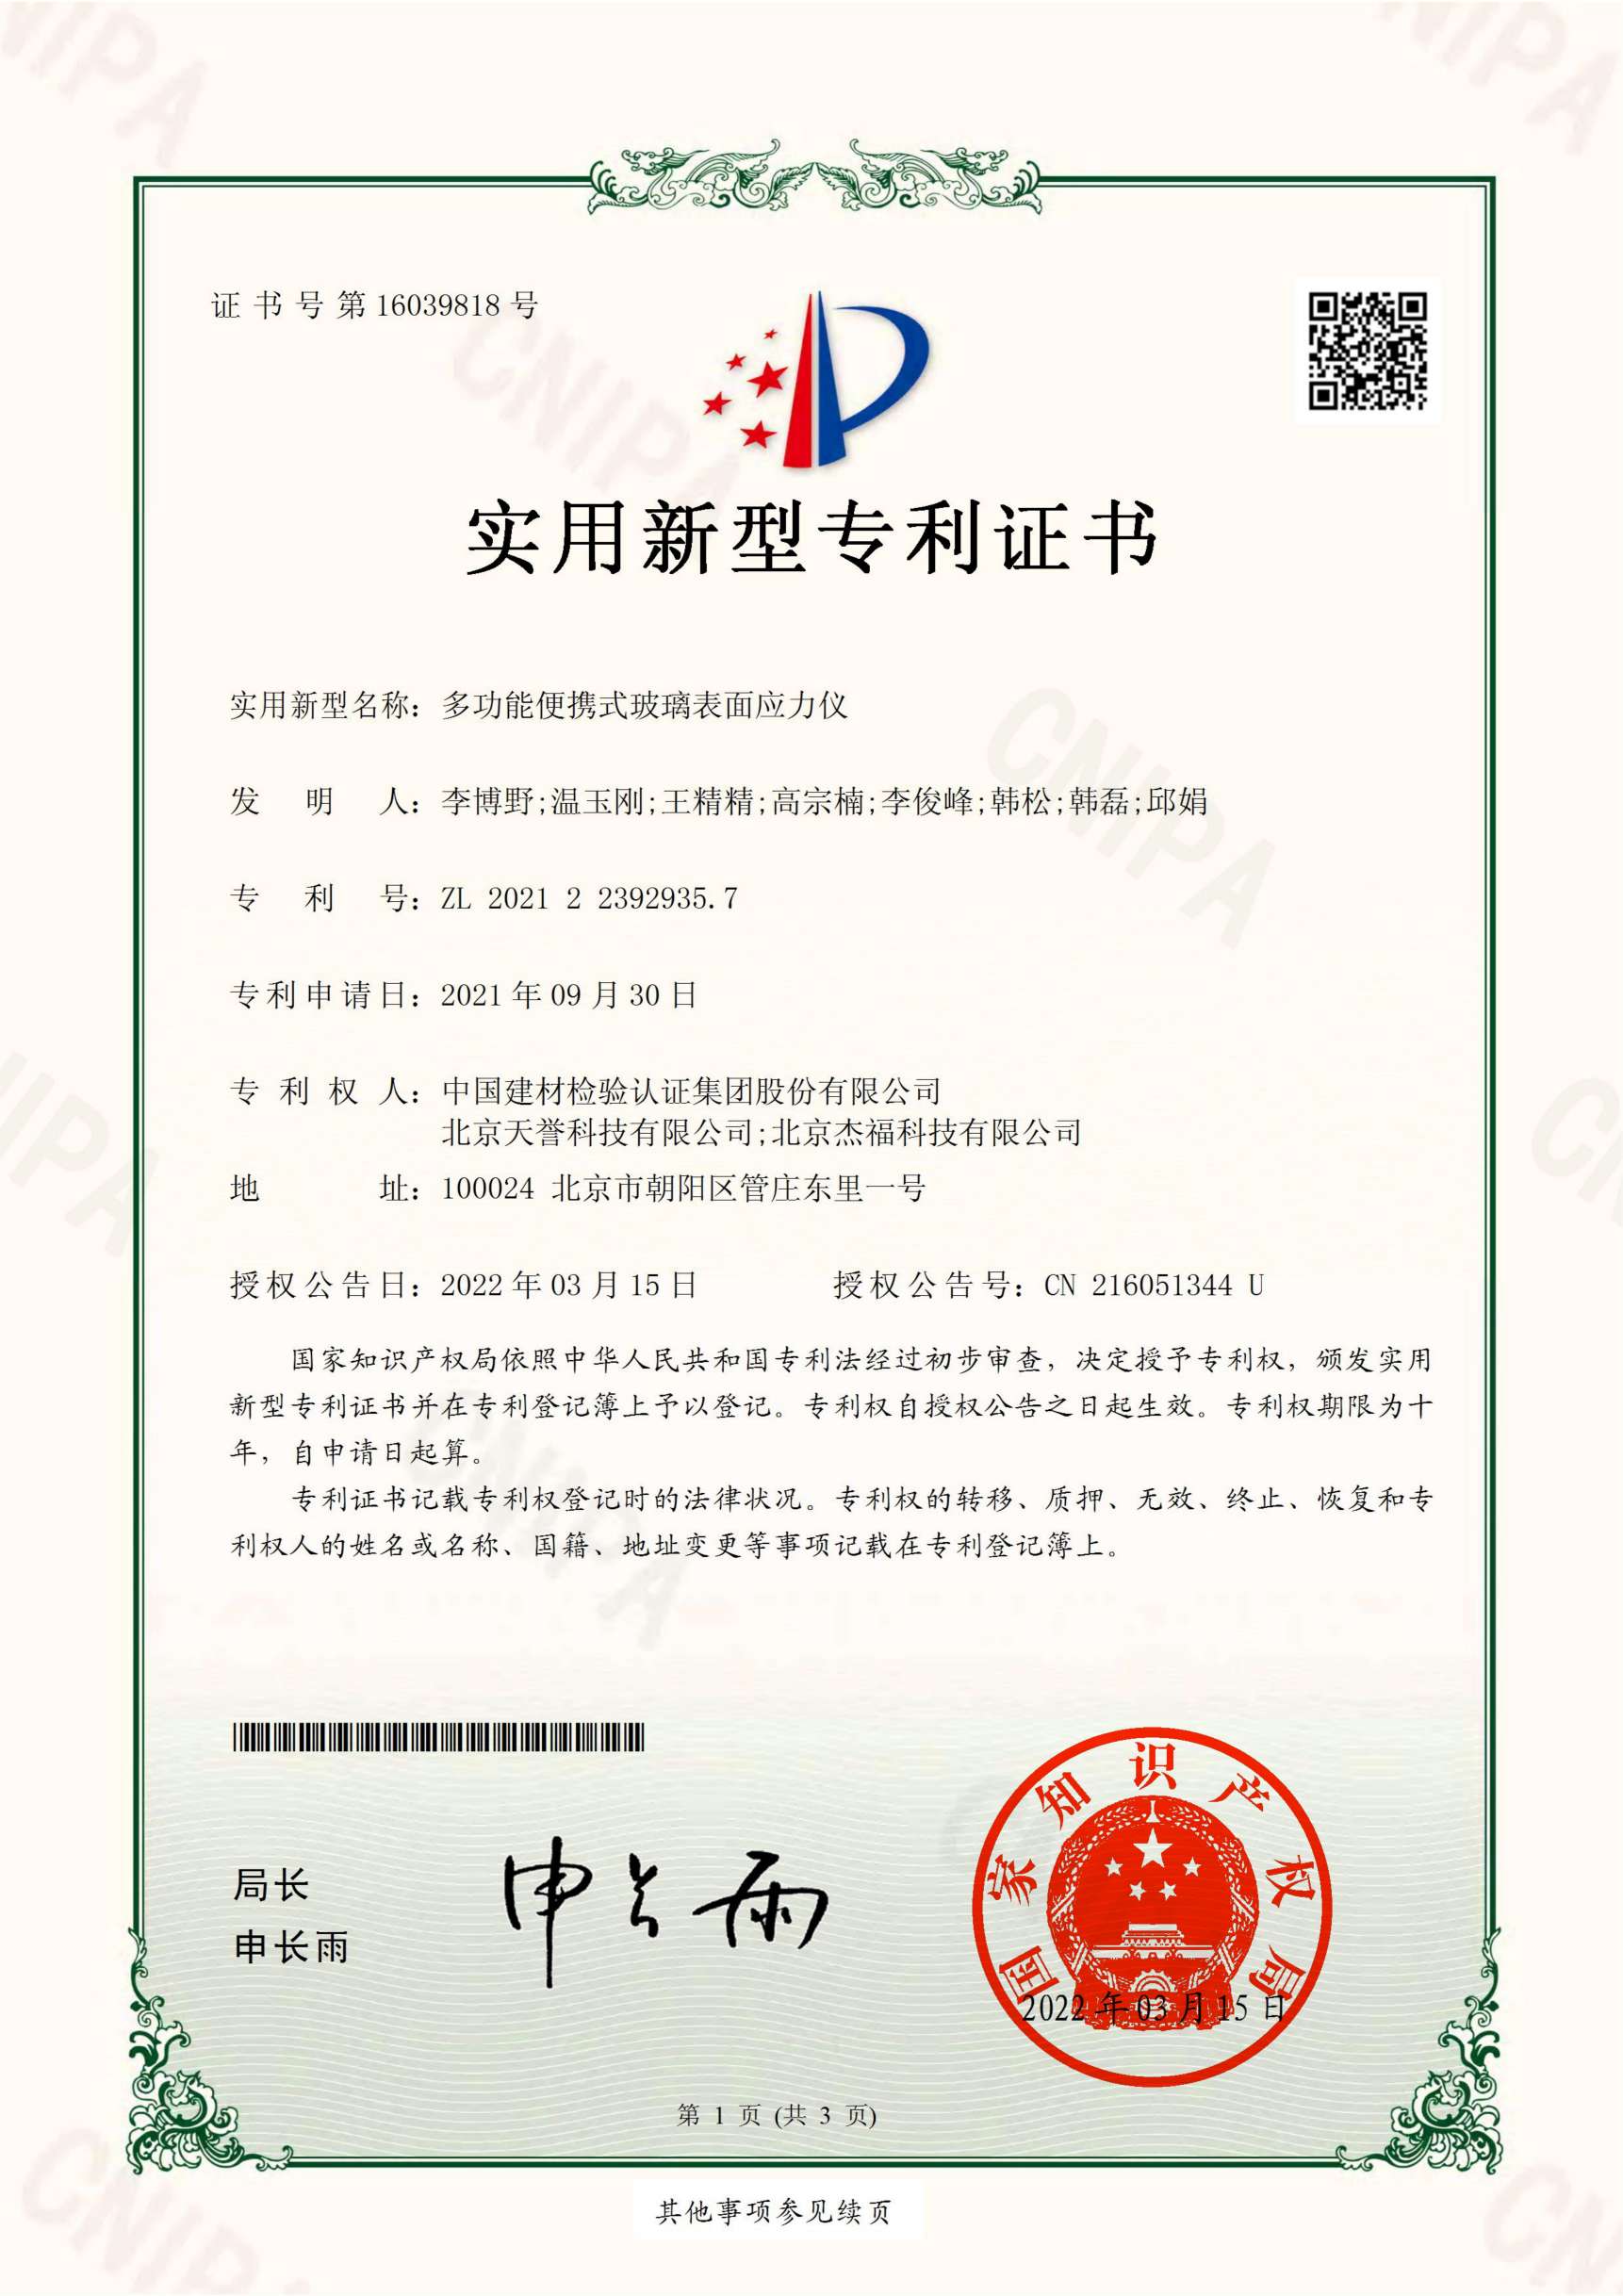 Certificate9